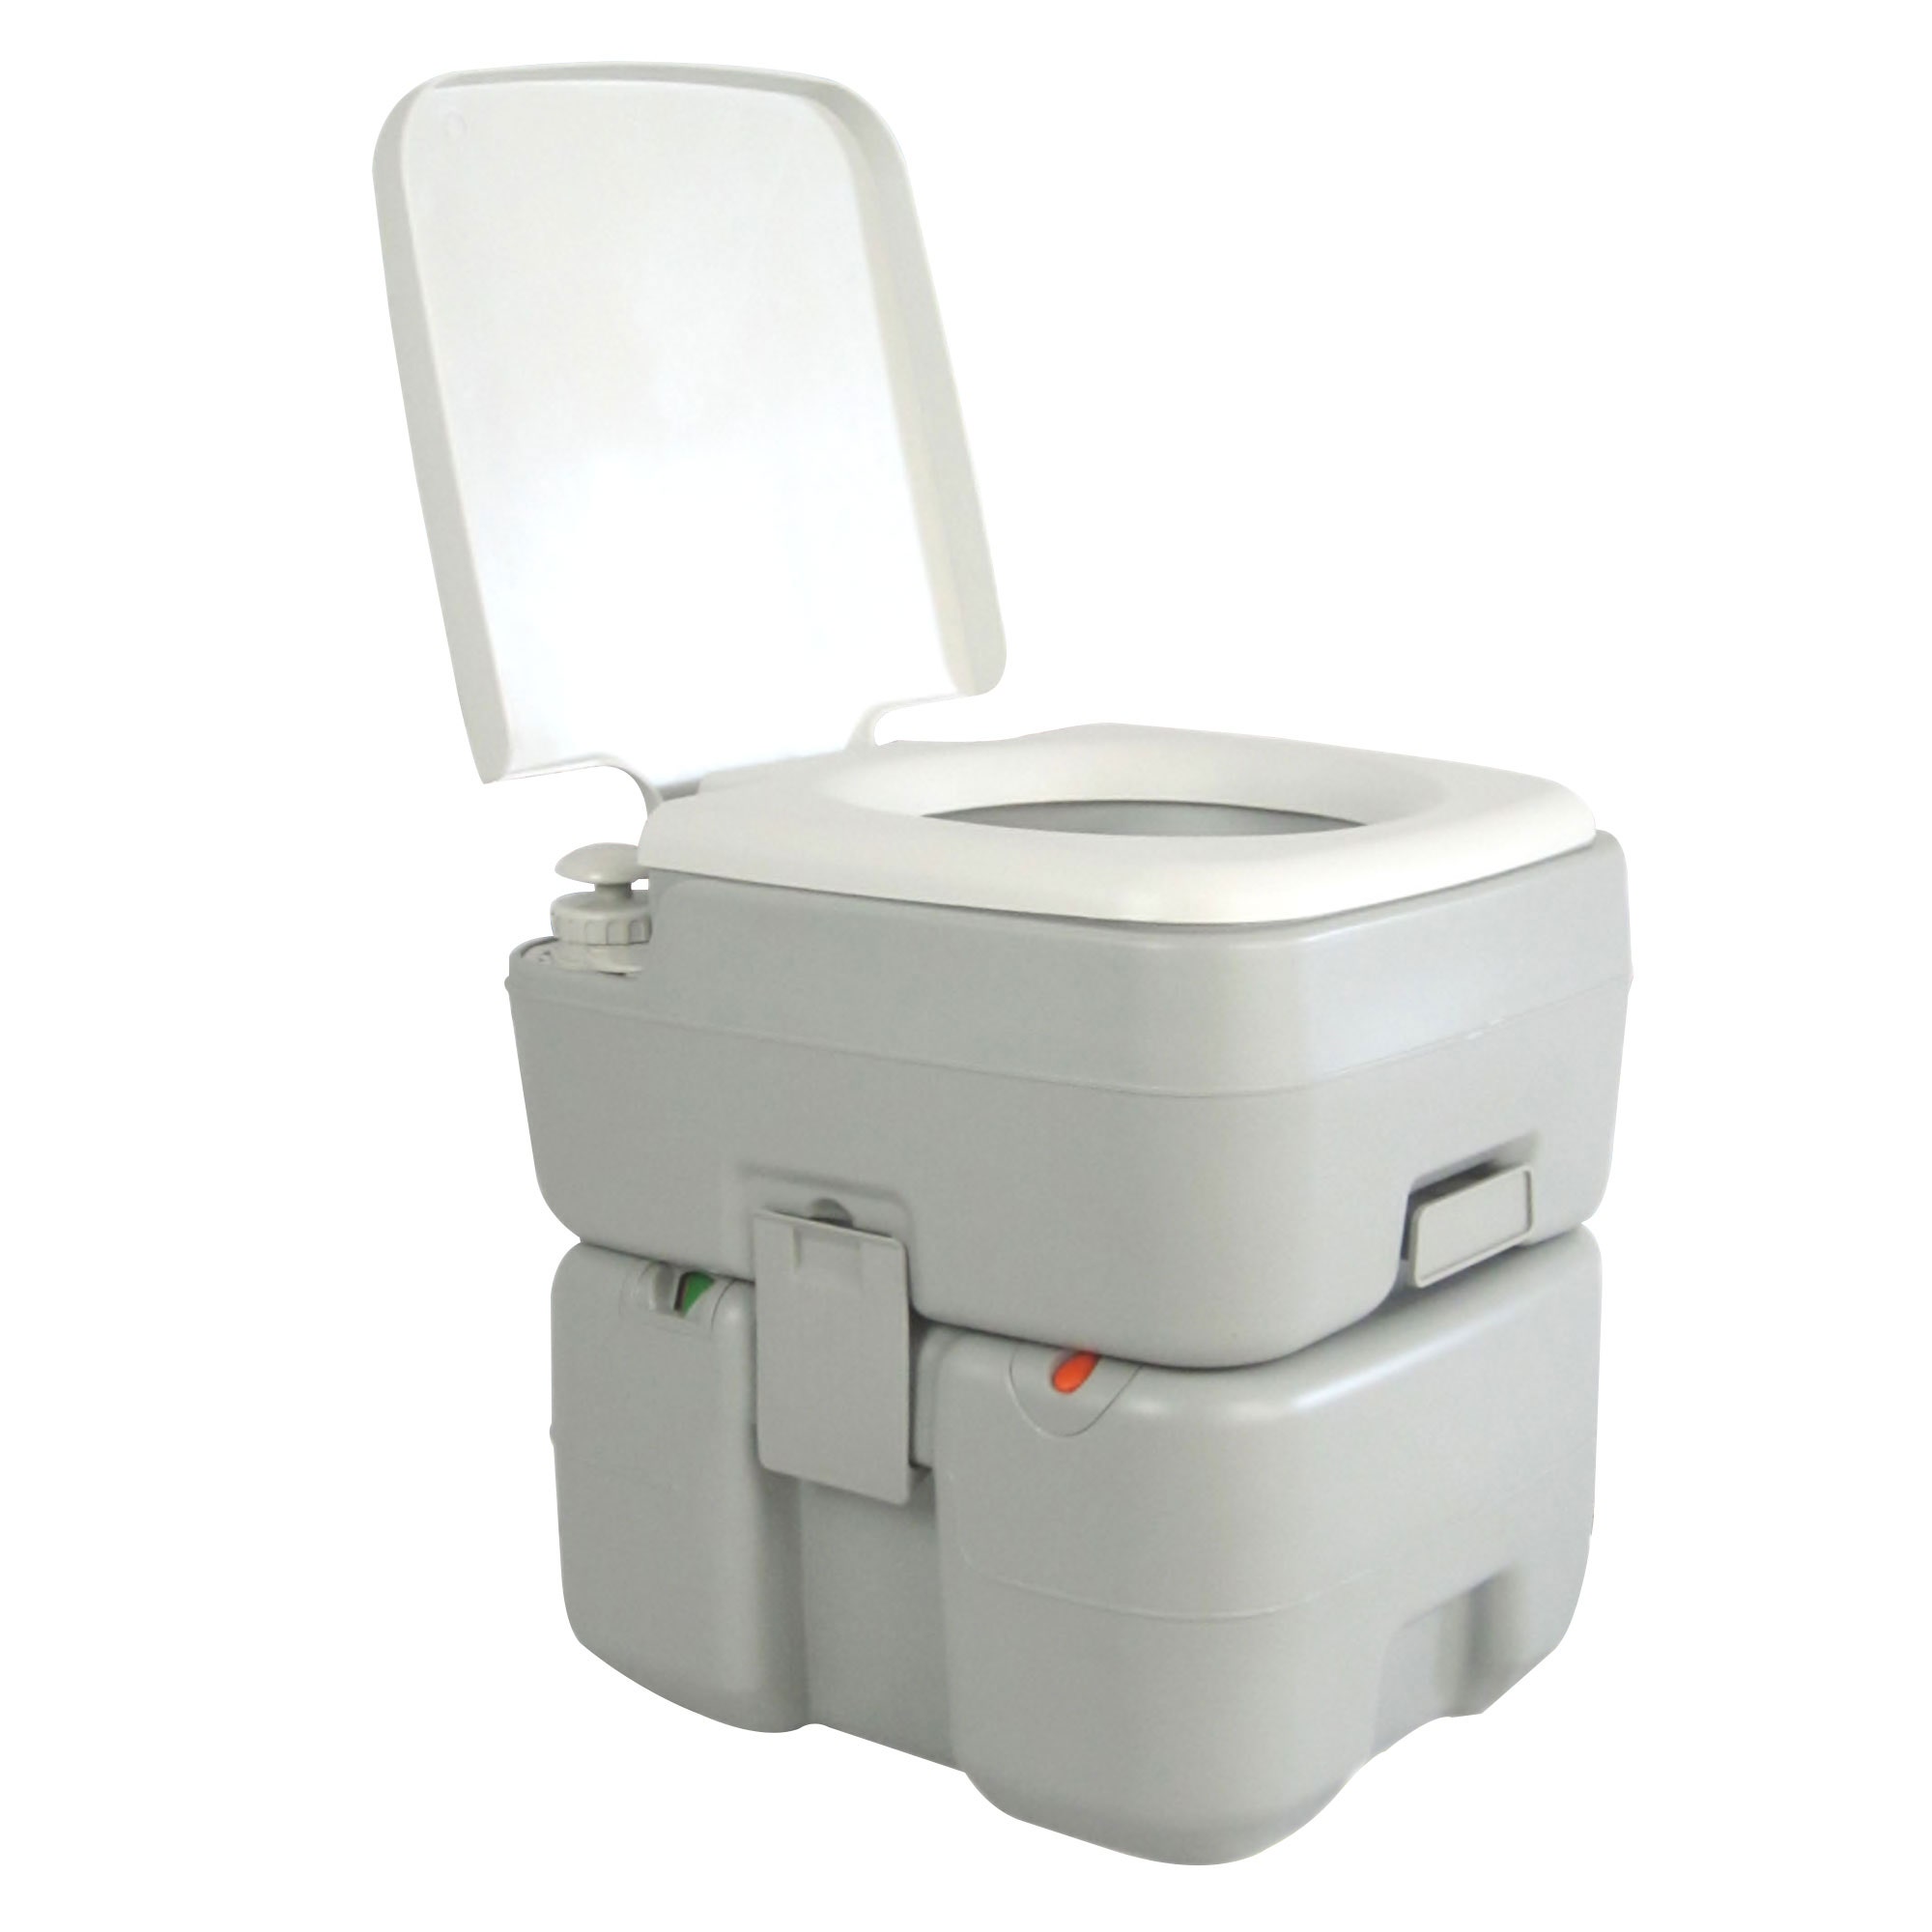 easily Swipe Coast Dedeman - Toaleta ecologica portabila Kadda CHH-3120T, gri, 20 L - Dedicat  planurilor tale